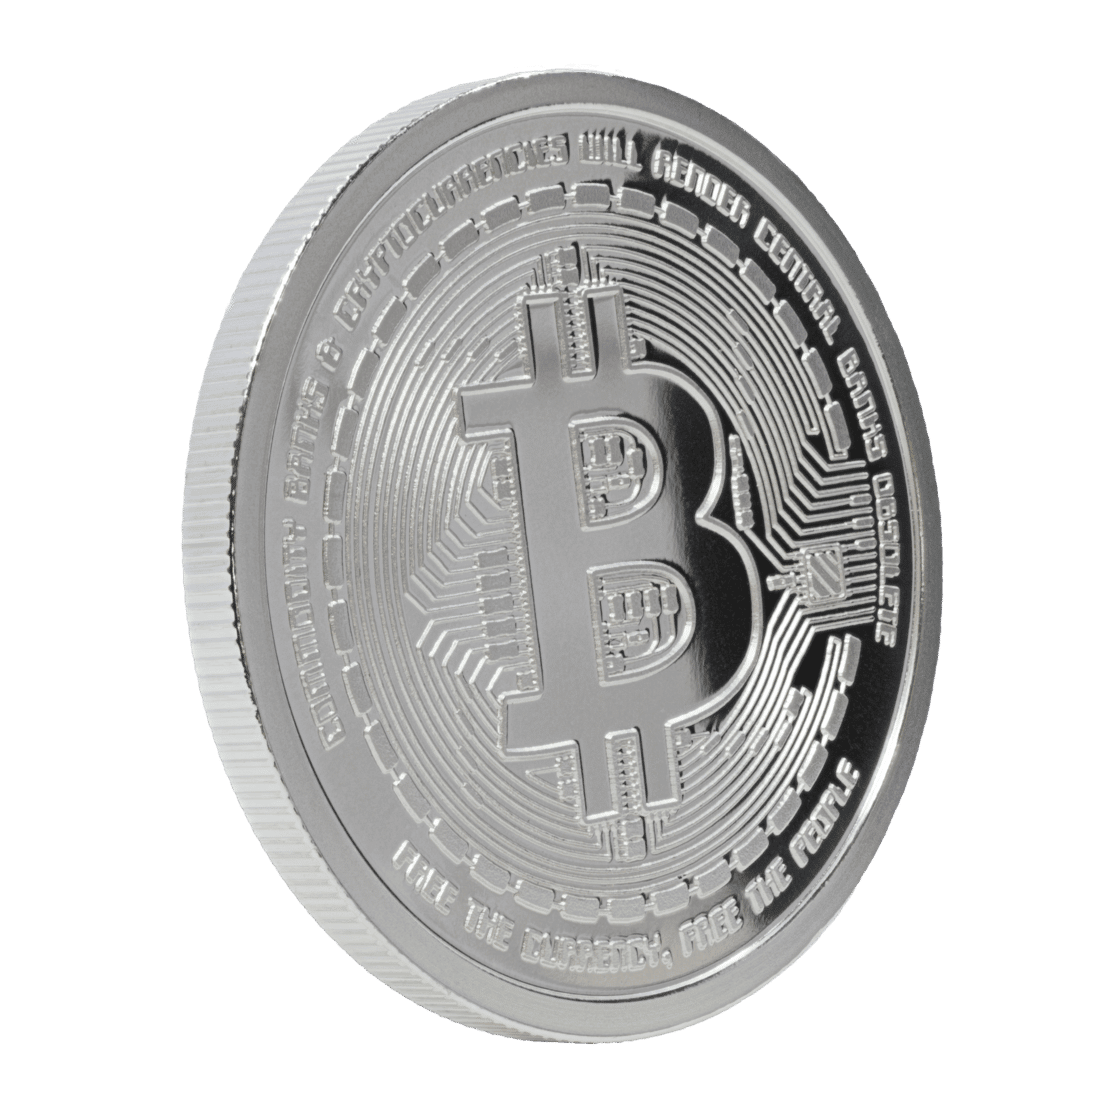 bitcoin silver coin value